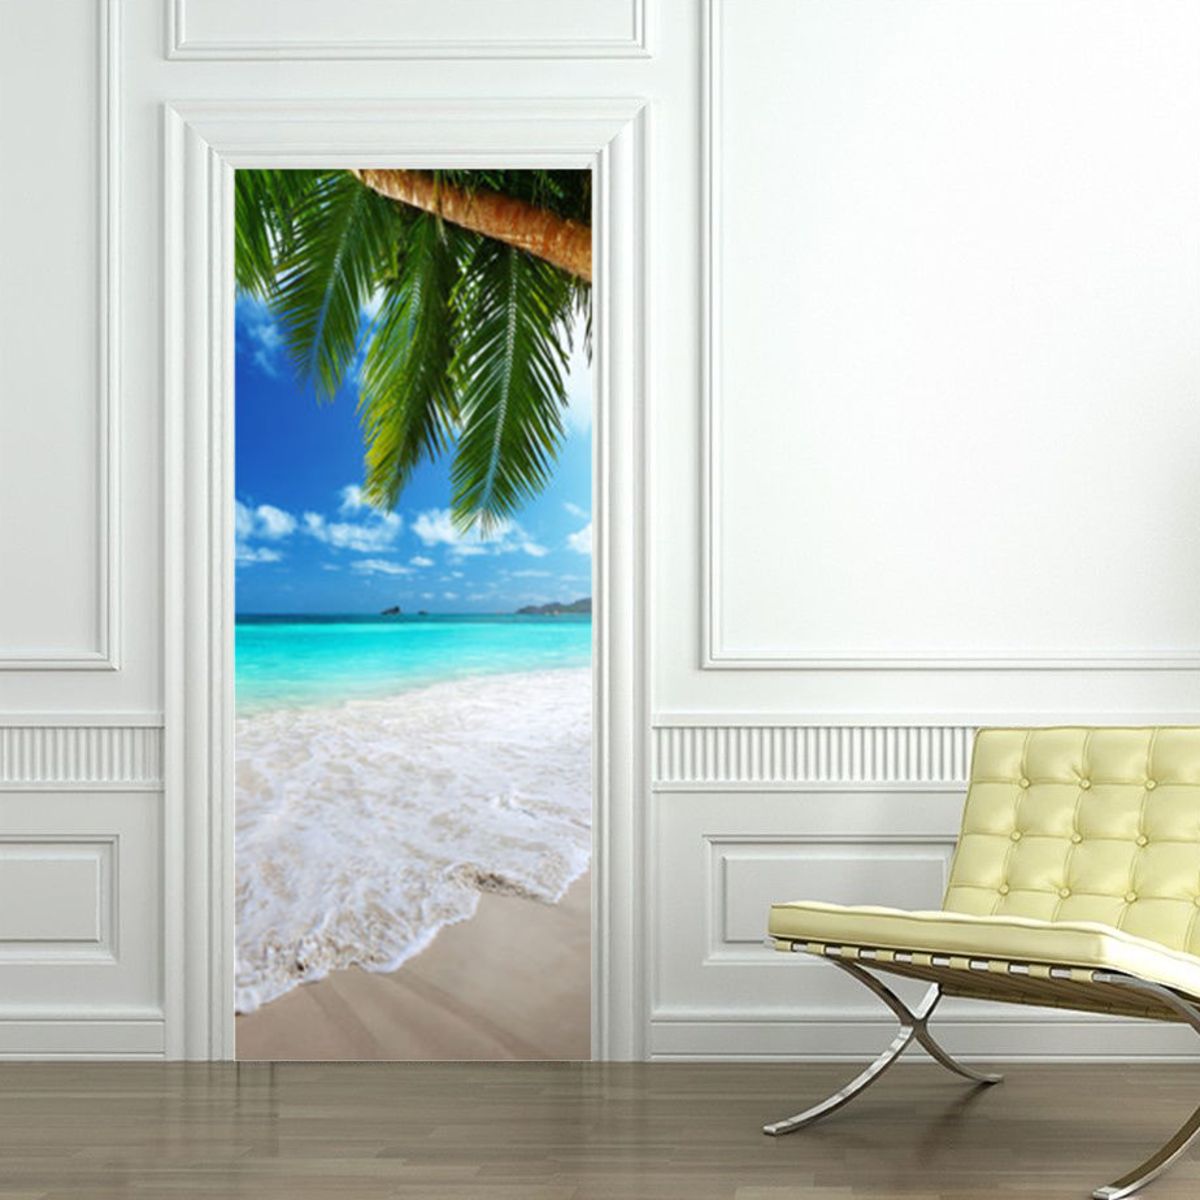 3D-Beach-Door-Sticker-Fridge-Decals-Mural-Home-Wall-Decorations-1444002